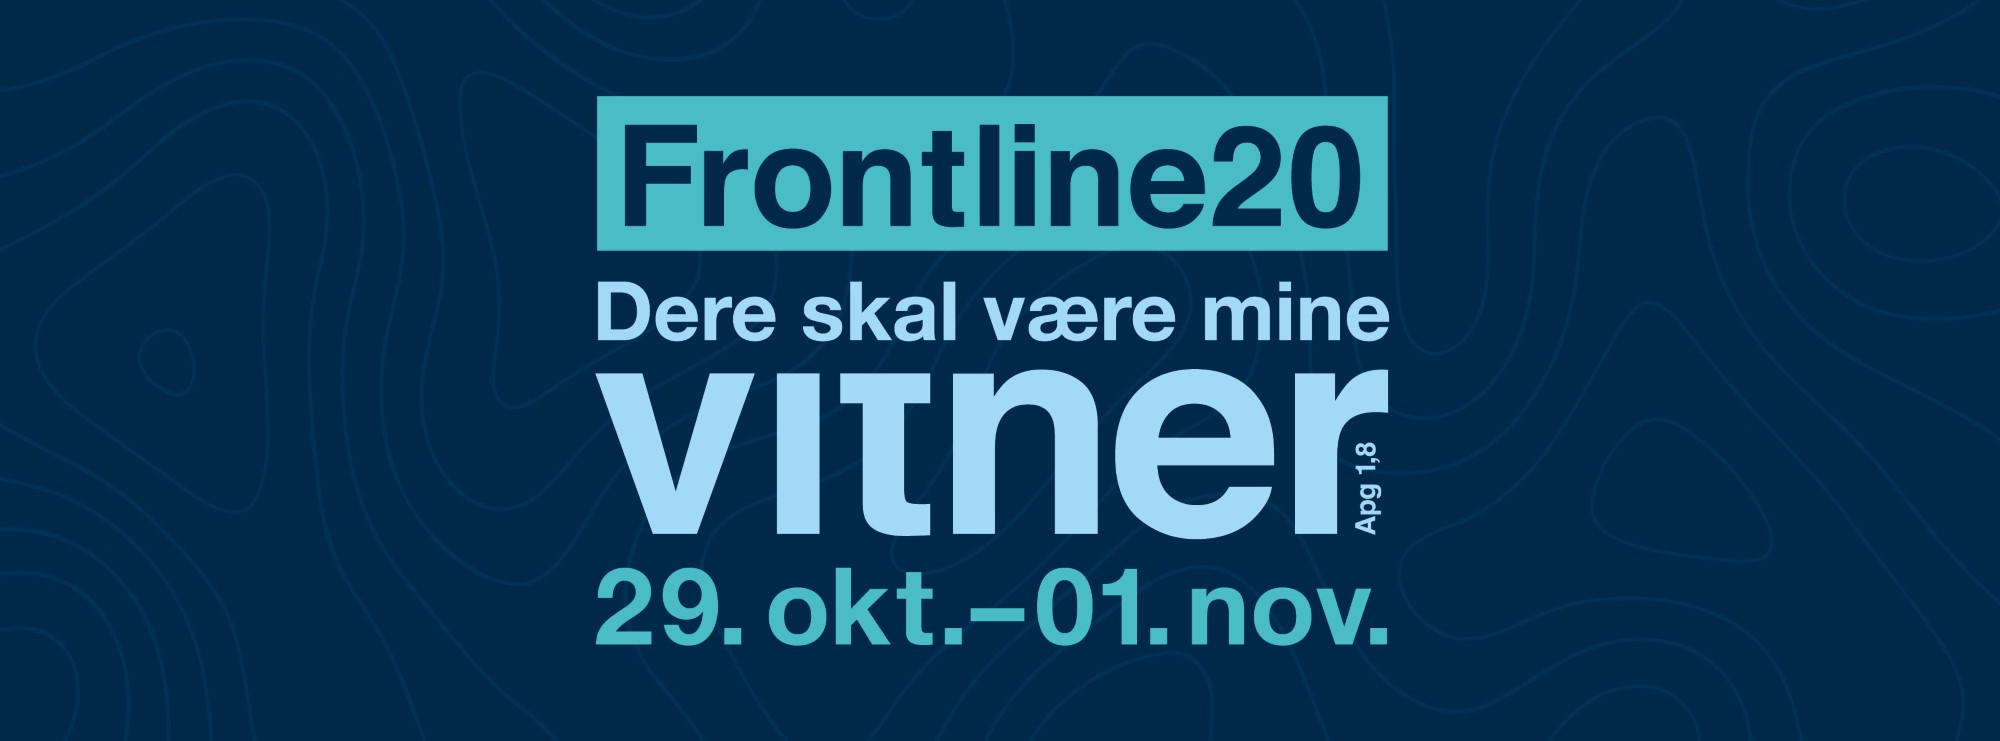 Frontline 2020